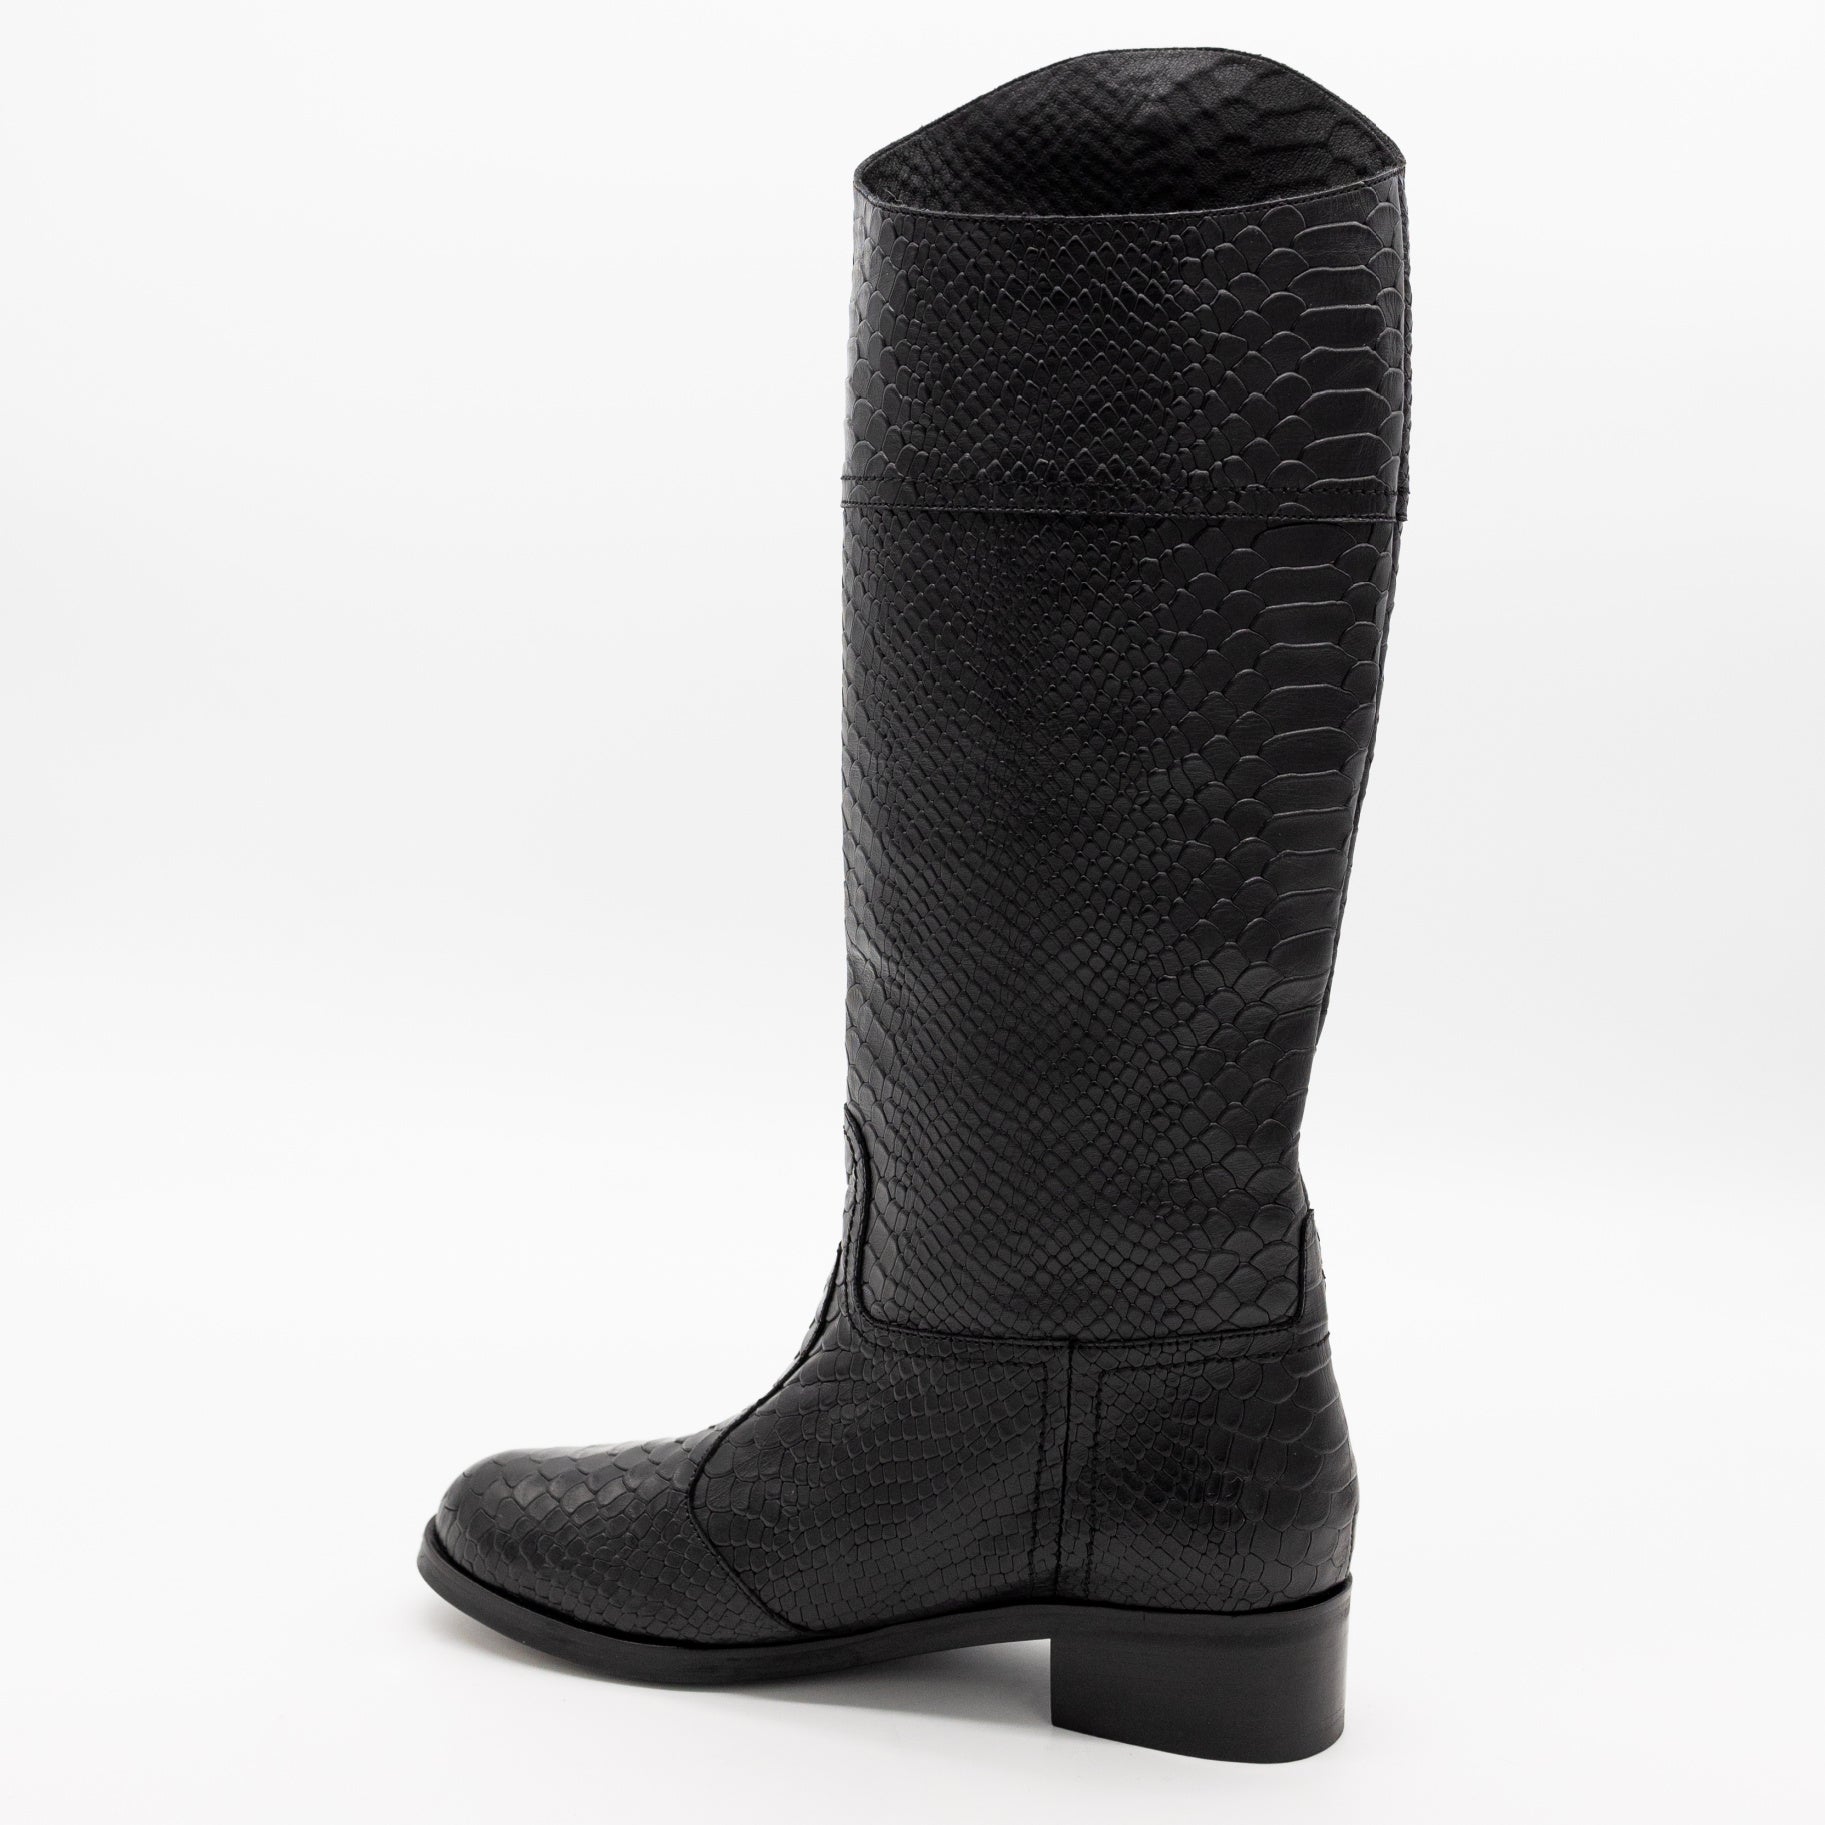 Black Embossed Snakeskin Leather Boot. Stivali New York